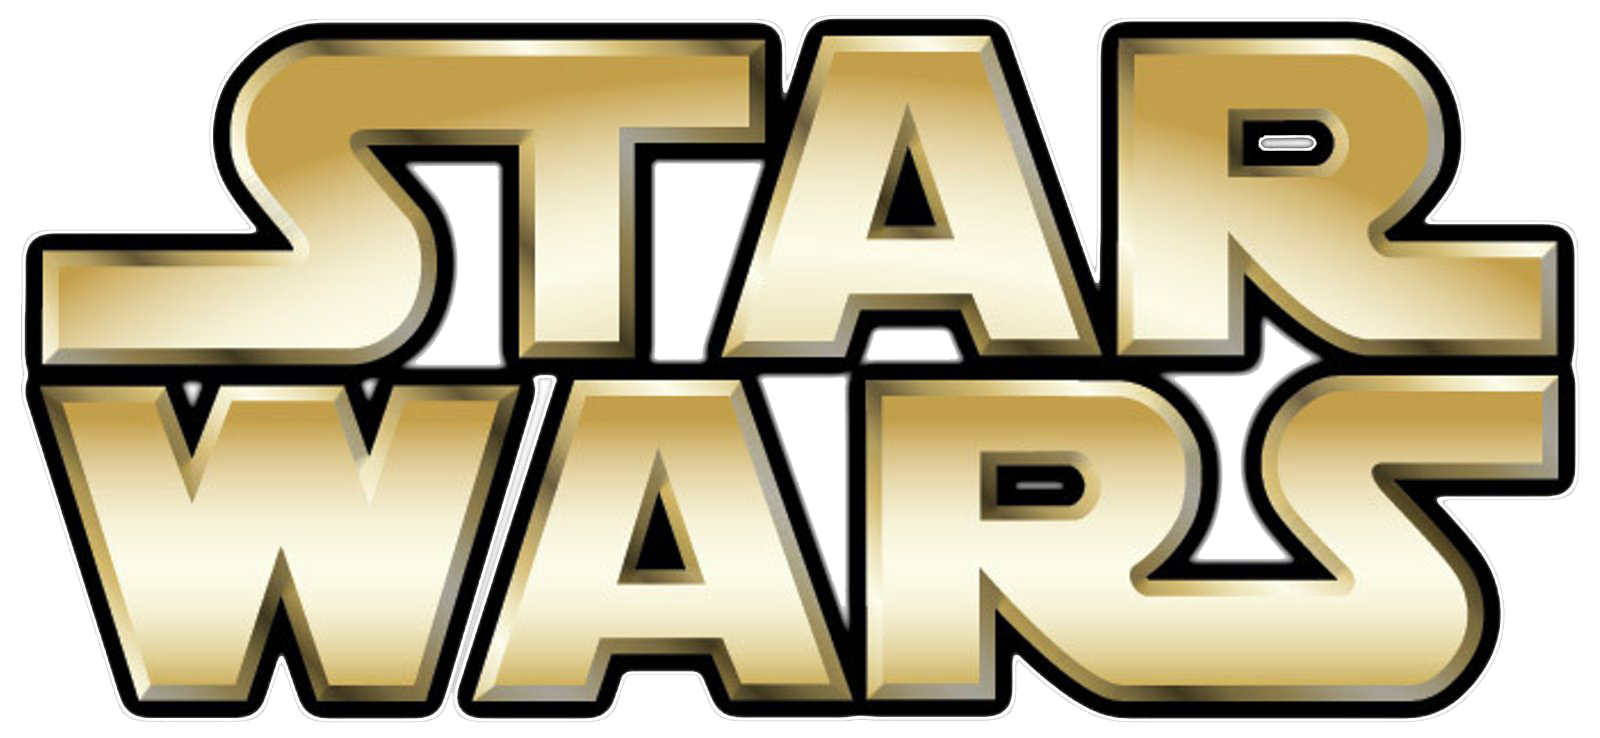 Star Wars logo PNG gratis descarga de archivos